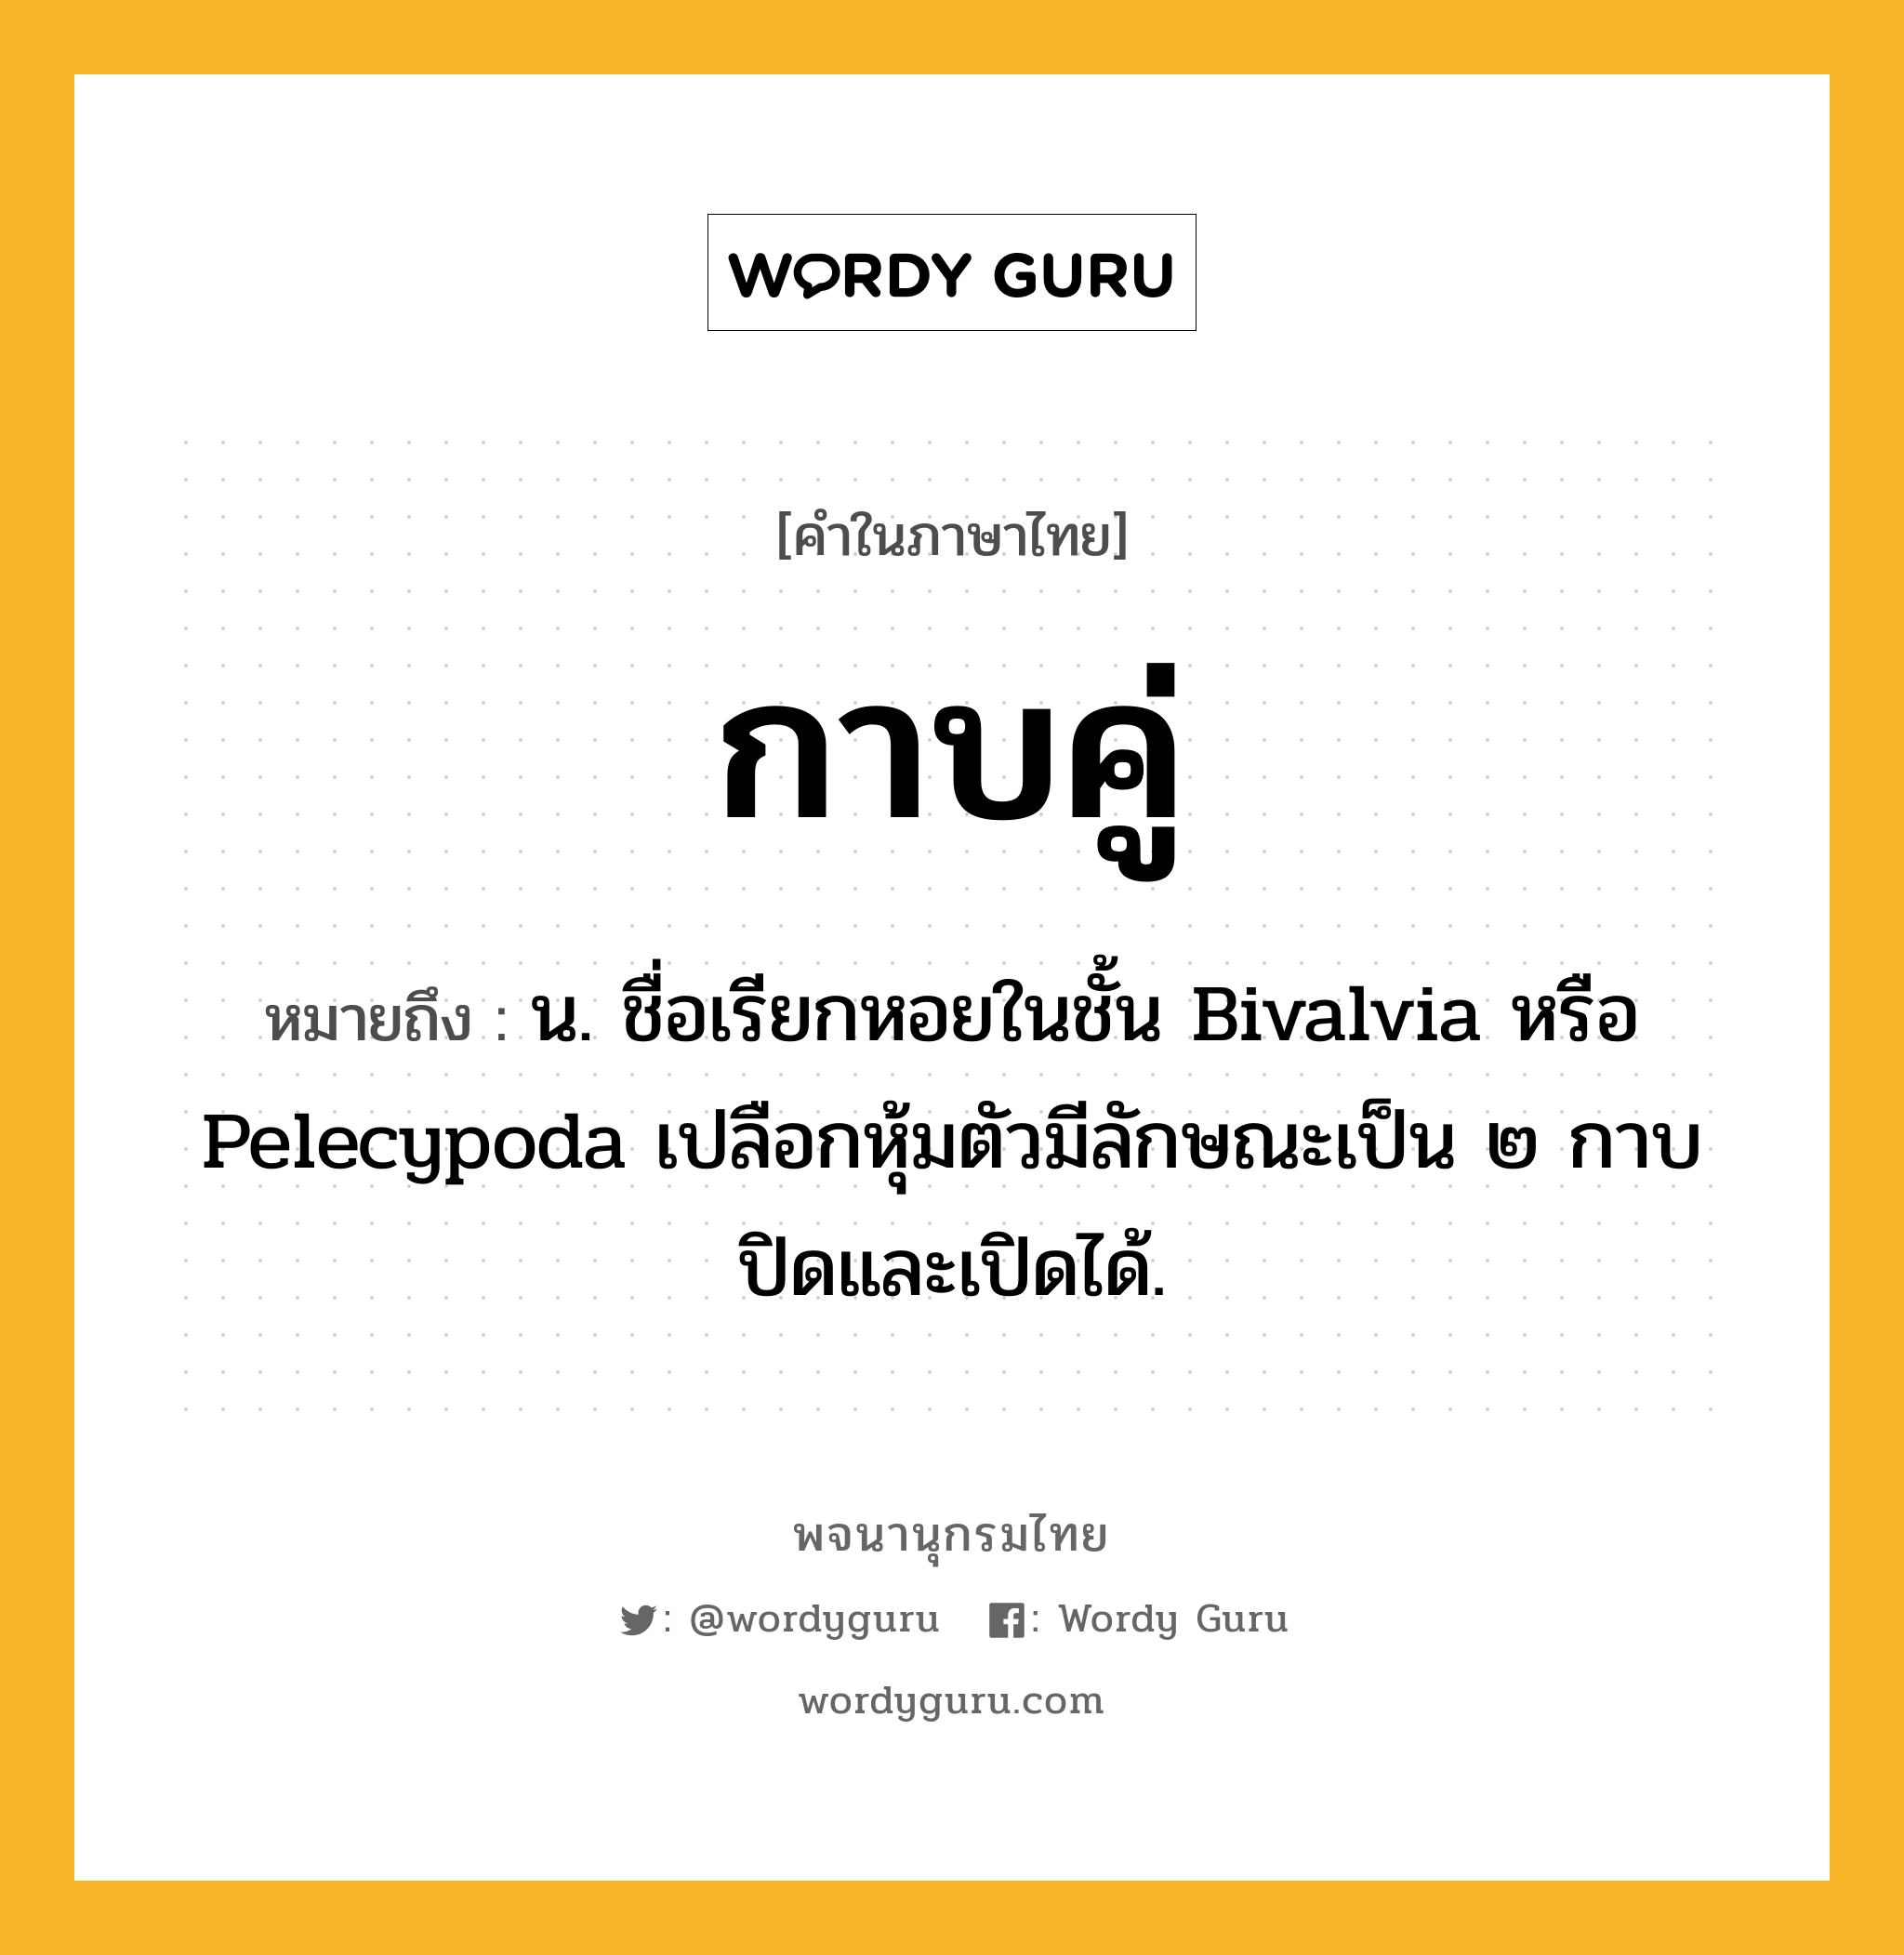 กาบคู่ หมายถึงอะไร?, คำในภาษาไทย กาบคู่ หมายถึง น. ชื่อเรียกหอยในชั้น Bivalvia หรือ Pelecypoda เปลือกหุ้มตัวมีลักษณะเป็น ๒ กาบ ปิดและเปิดได้.